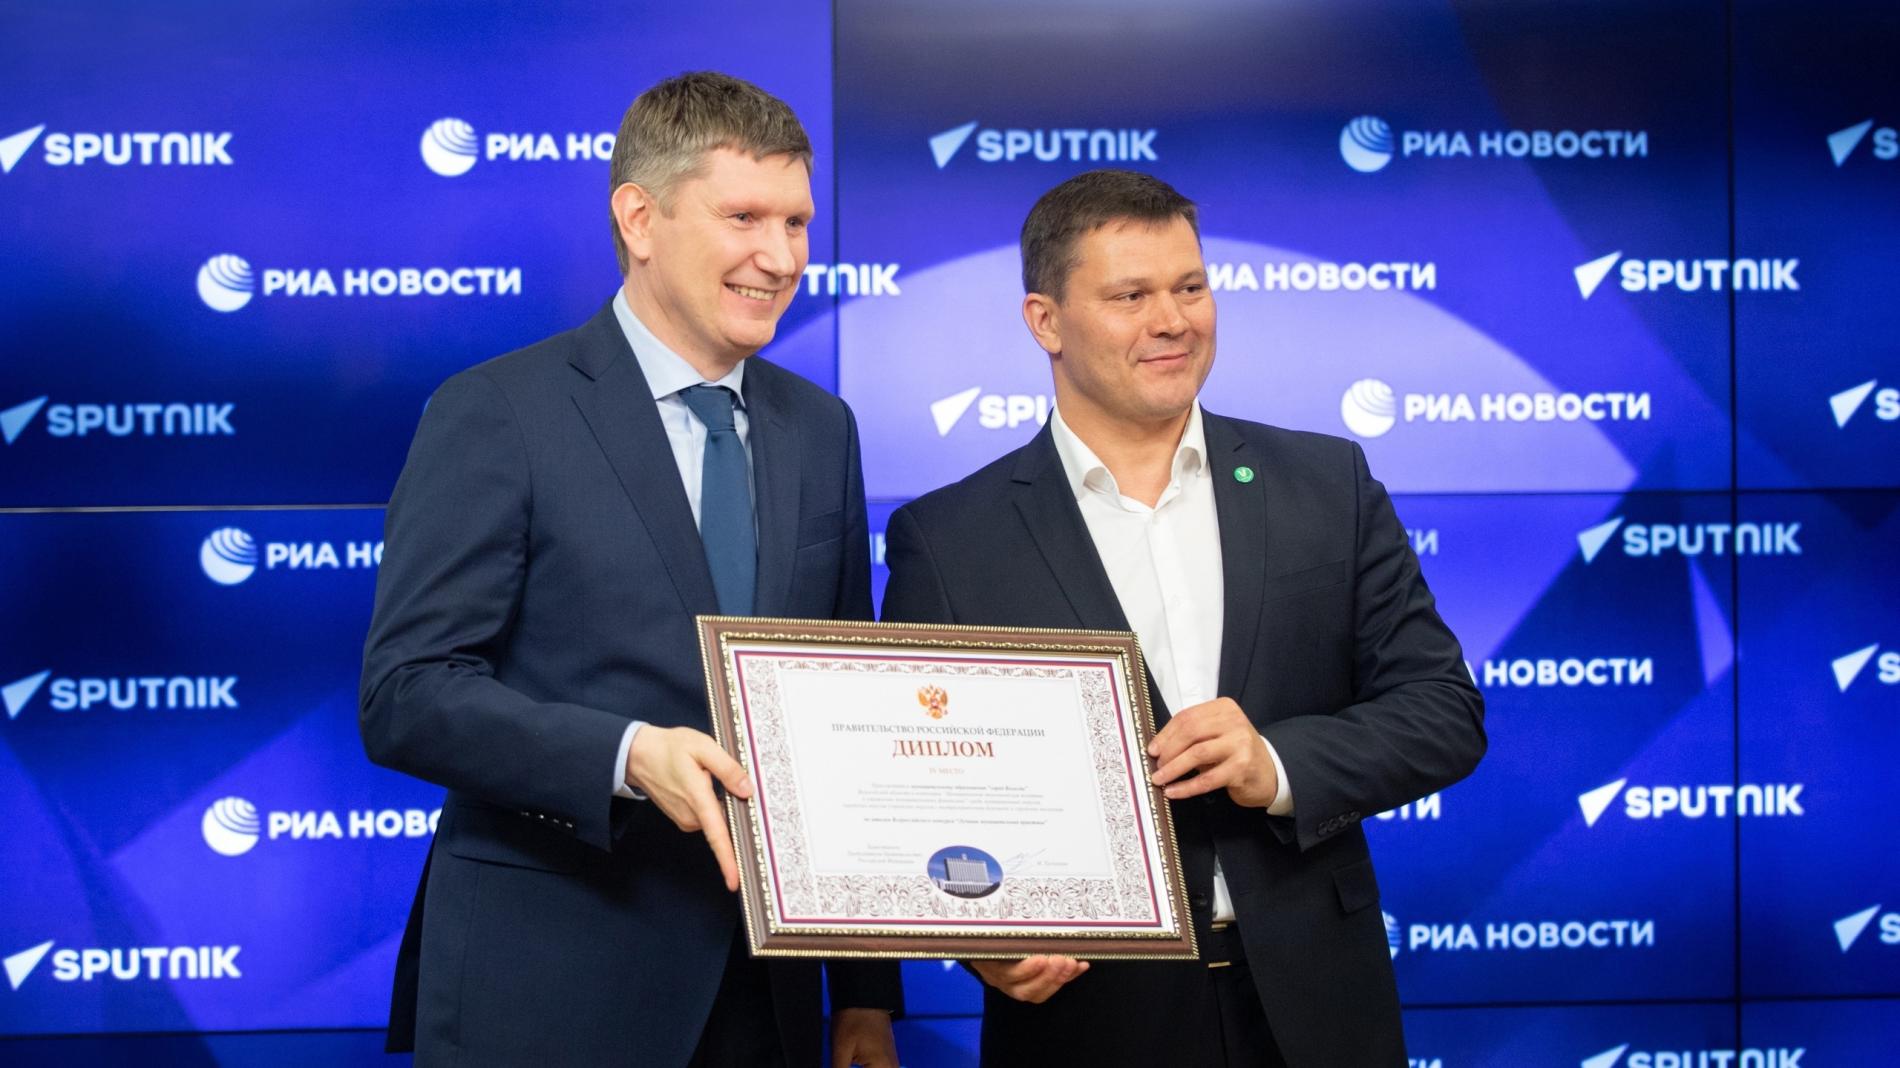 Мэру Вологды вручили награду за победу во Всероссийском конкурсе «Лучшая муниципальная практика»